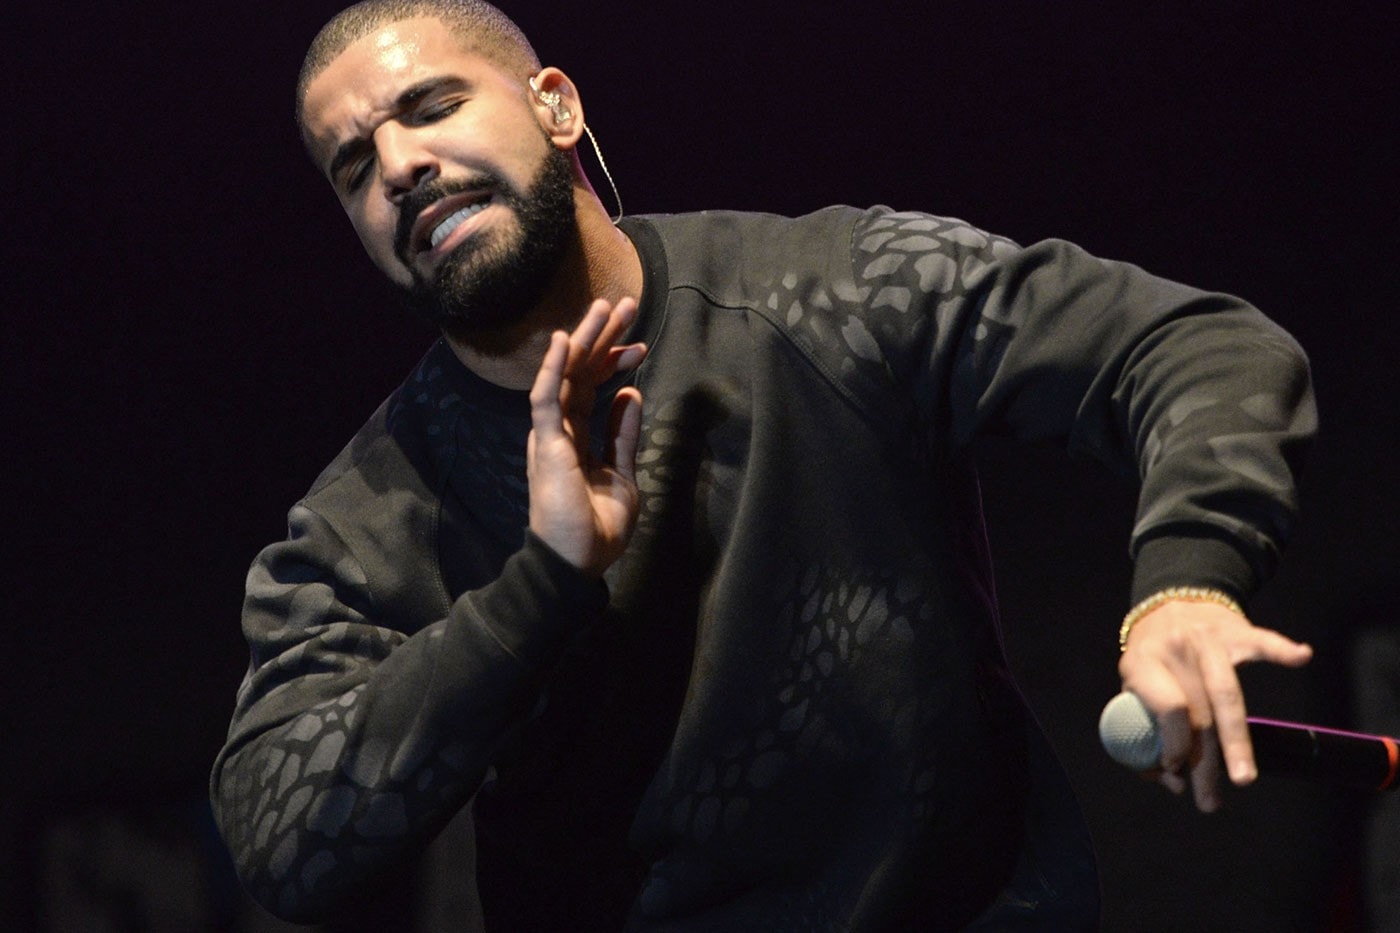 研究指出 Drake 的歌曲使人跑步變慢